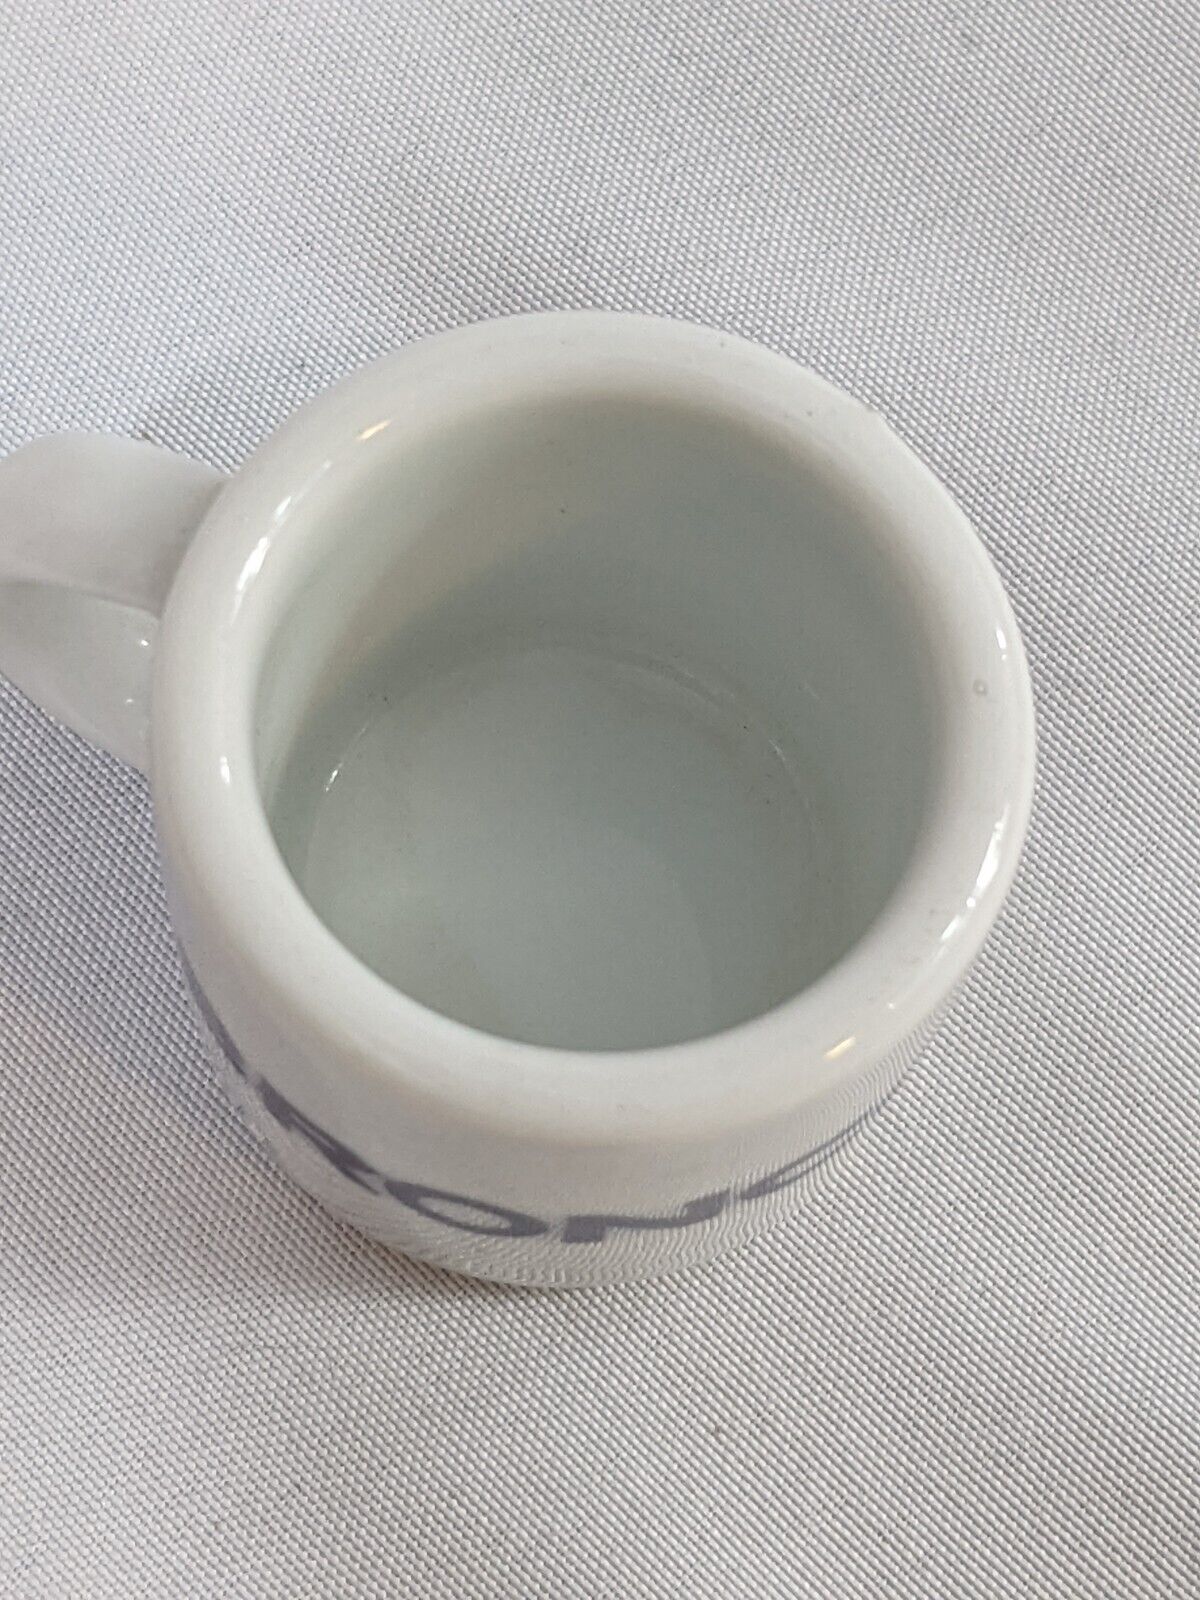 NFL Denver Broncos Collectible Mini Mug Espresso Coffee Shot White